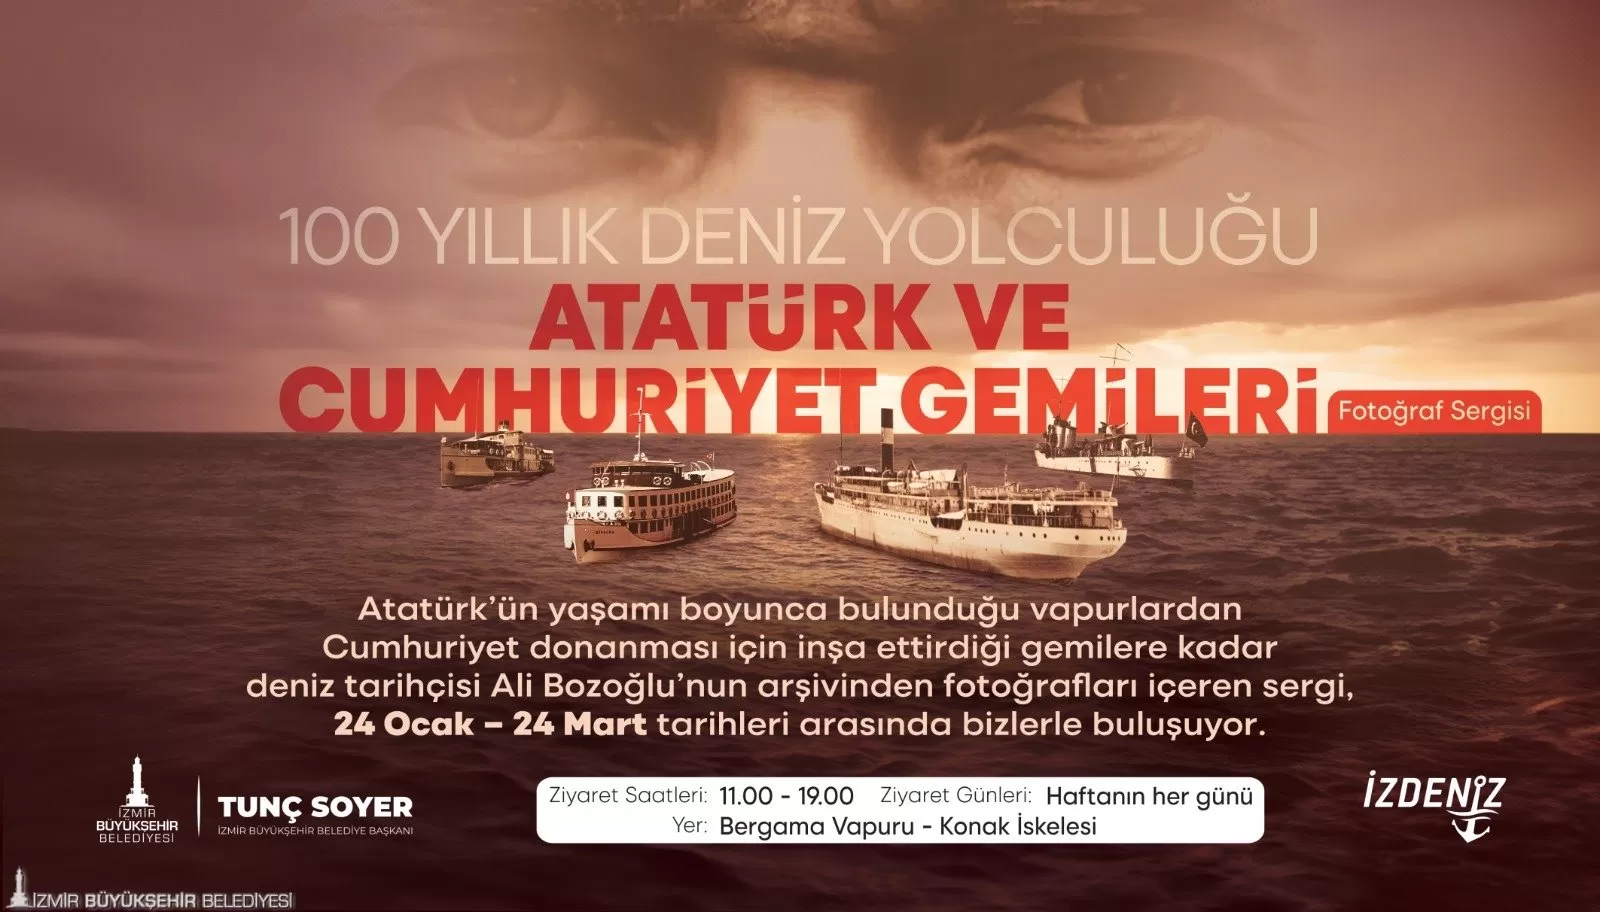 Atatürk ve Cumhuriyet Gemileri Fotoğraf Sergisi", 24 Ocak'ta Konak İskelesi'nde demirli tarihi Bergama Vapuru'nda İzmirlilere kapılarını açıyor. 